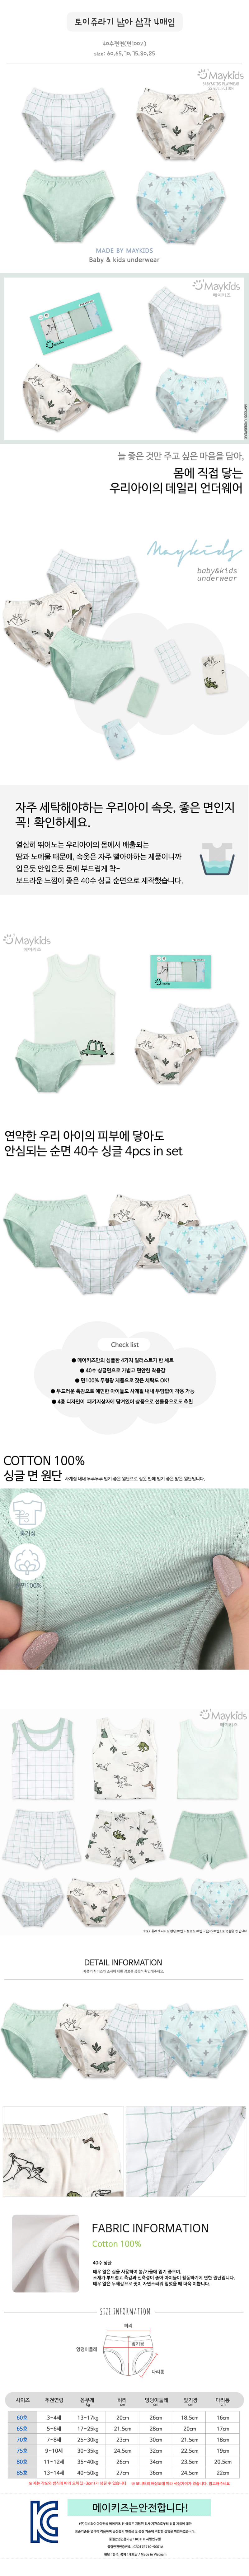 Maykids - Korean Children Fashion - #todddlerfashion - Toy Underwear